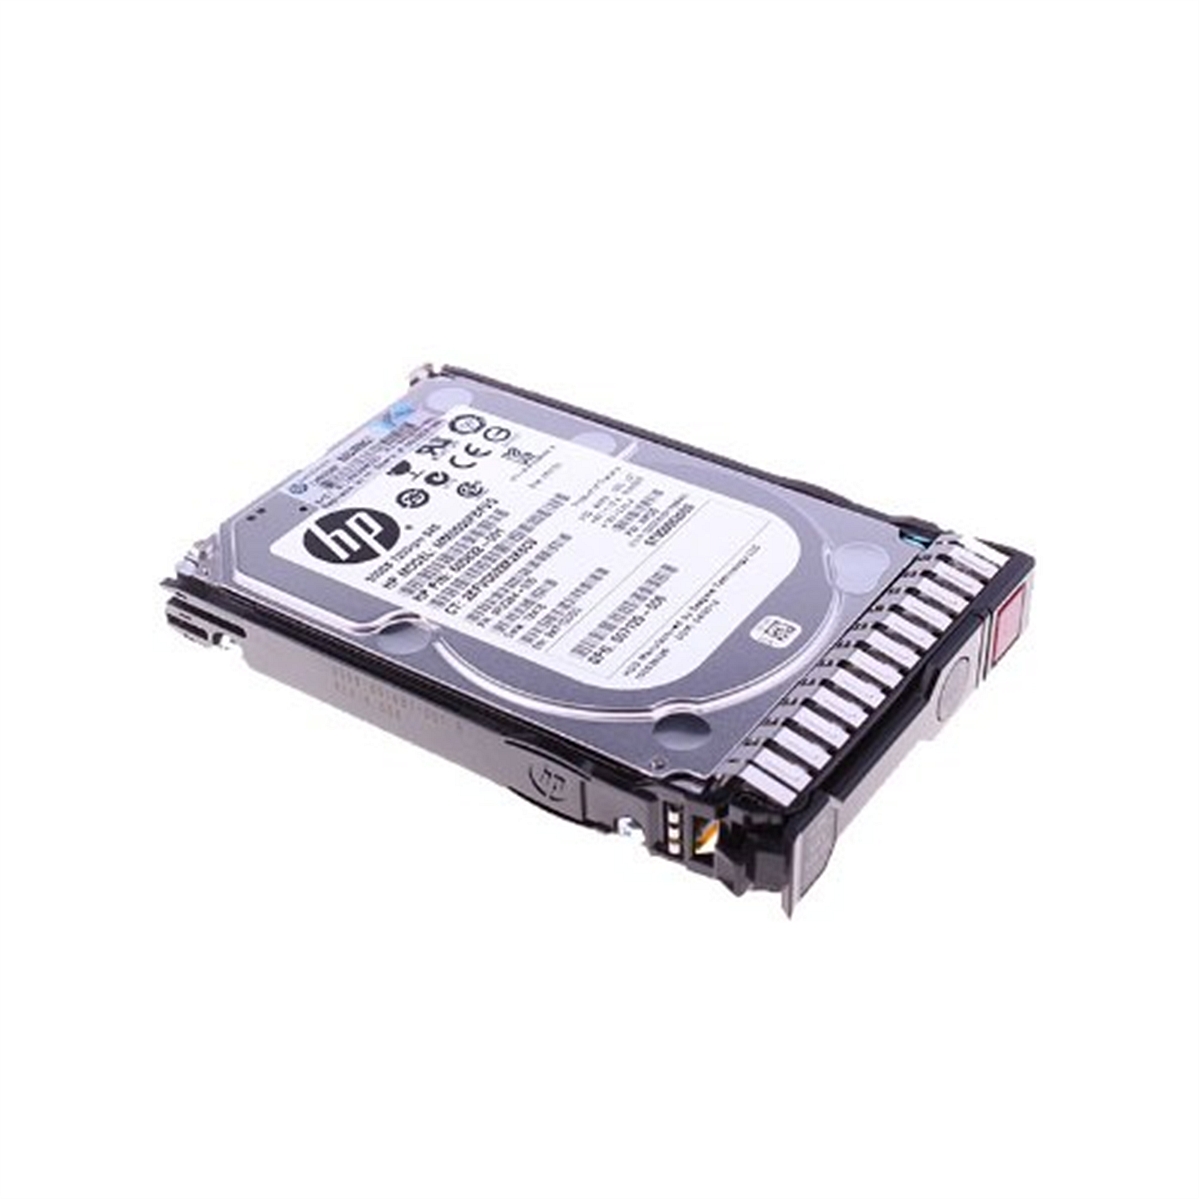 惠普HP653953服务器硬盘(个)